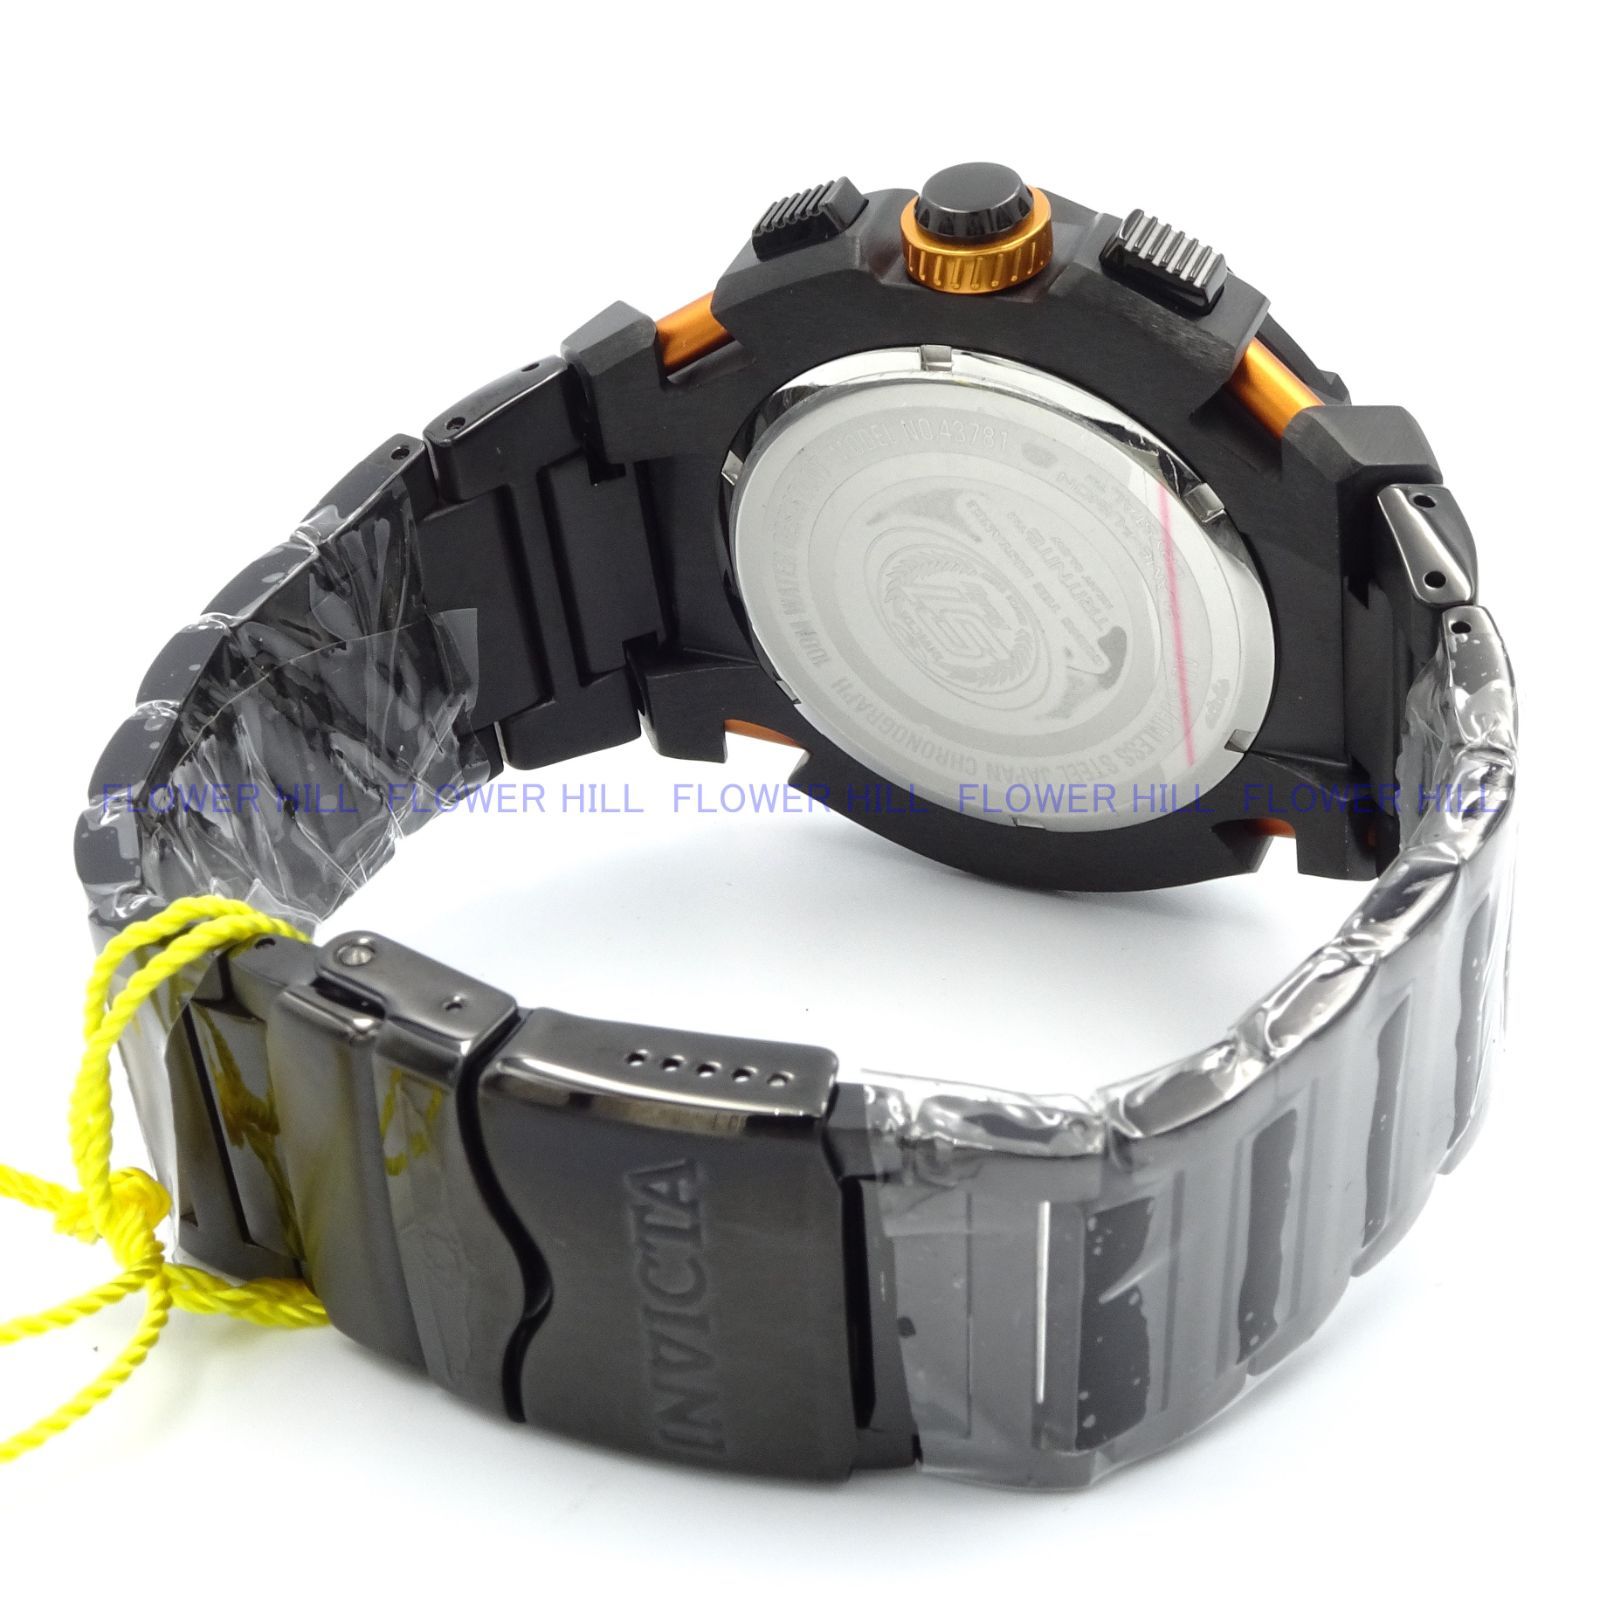 INVICTA インビクタ 腕時計 メンズ S1 RALLY 43781 ブラック・ブルー クォーツ クロノグラフ メタルバンド